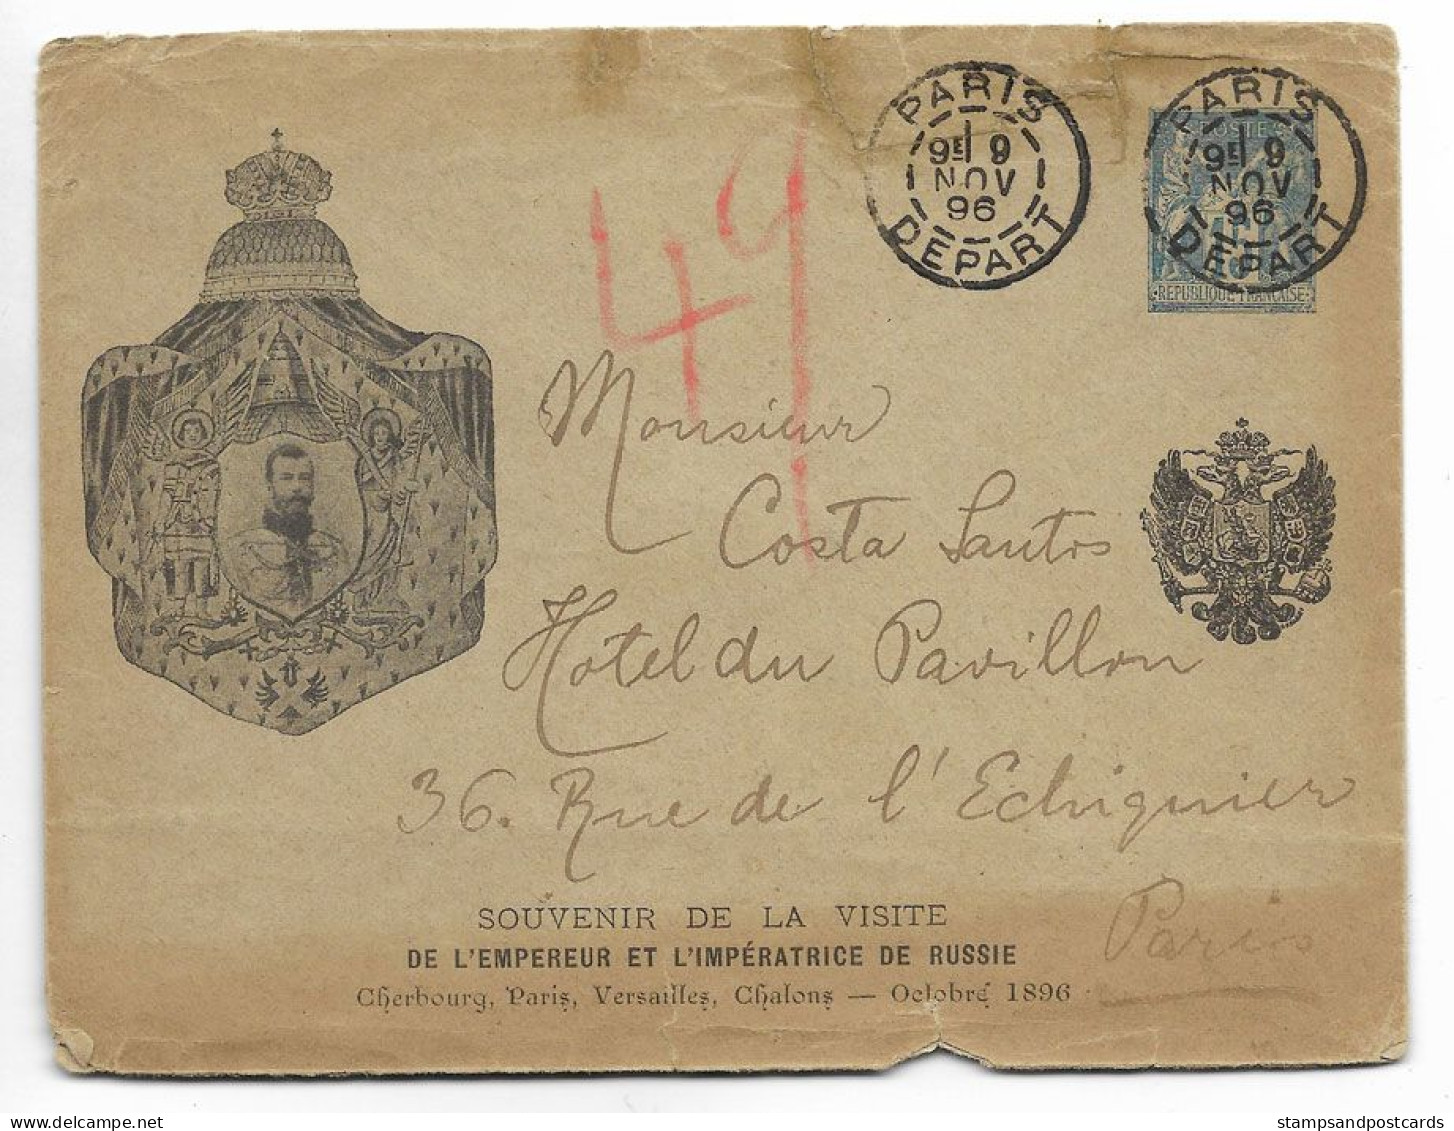 France Souvenir Visite Empereur Russie 1896 Rare Carte Entier Repiqué Voyagé Russia Czar Visit France Stationery Cover - Kaartbrieven